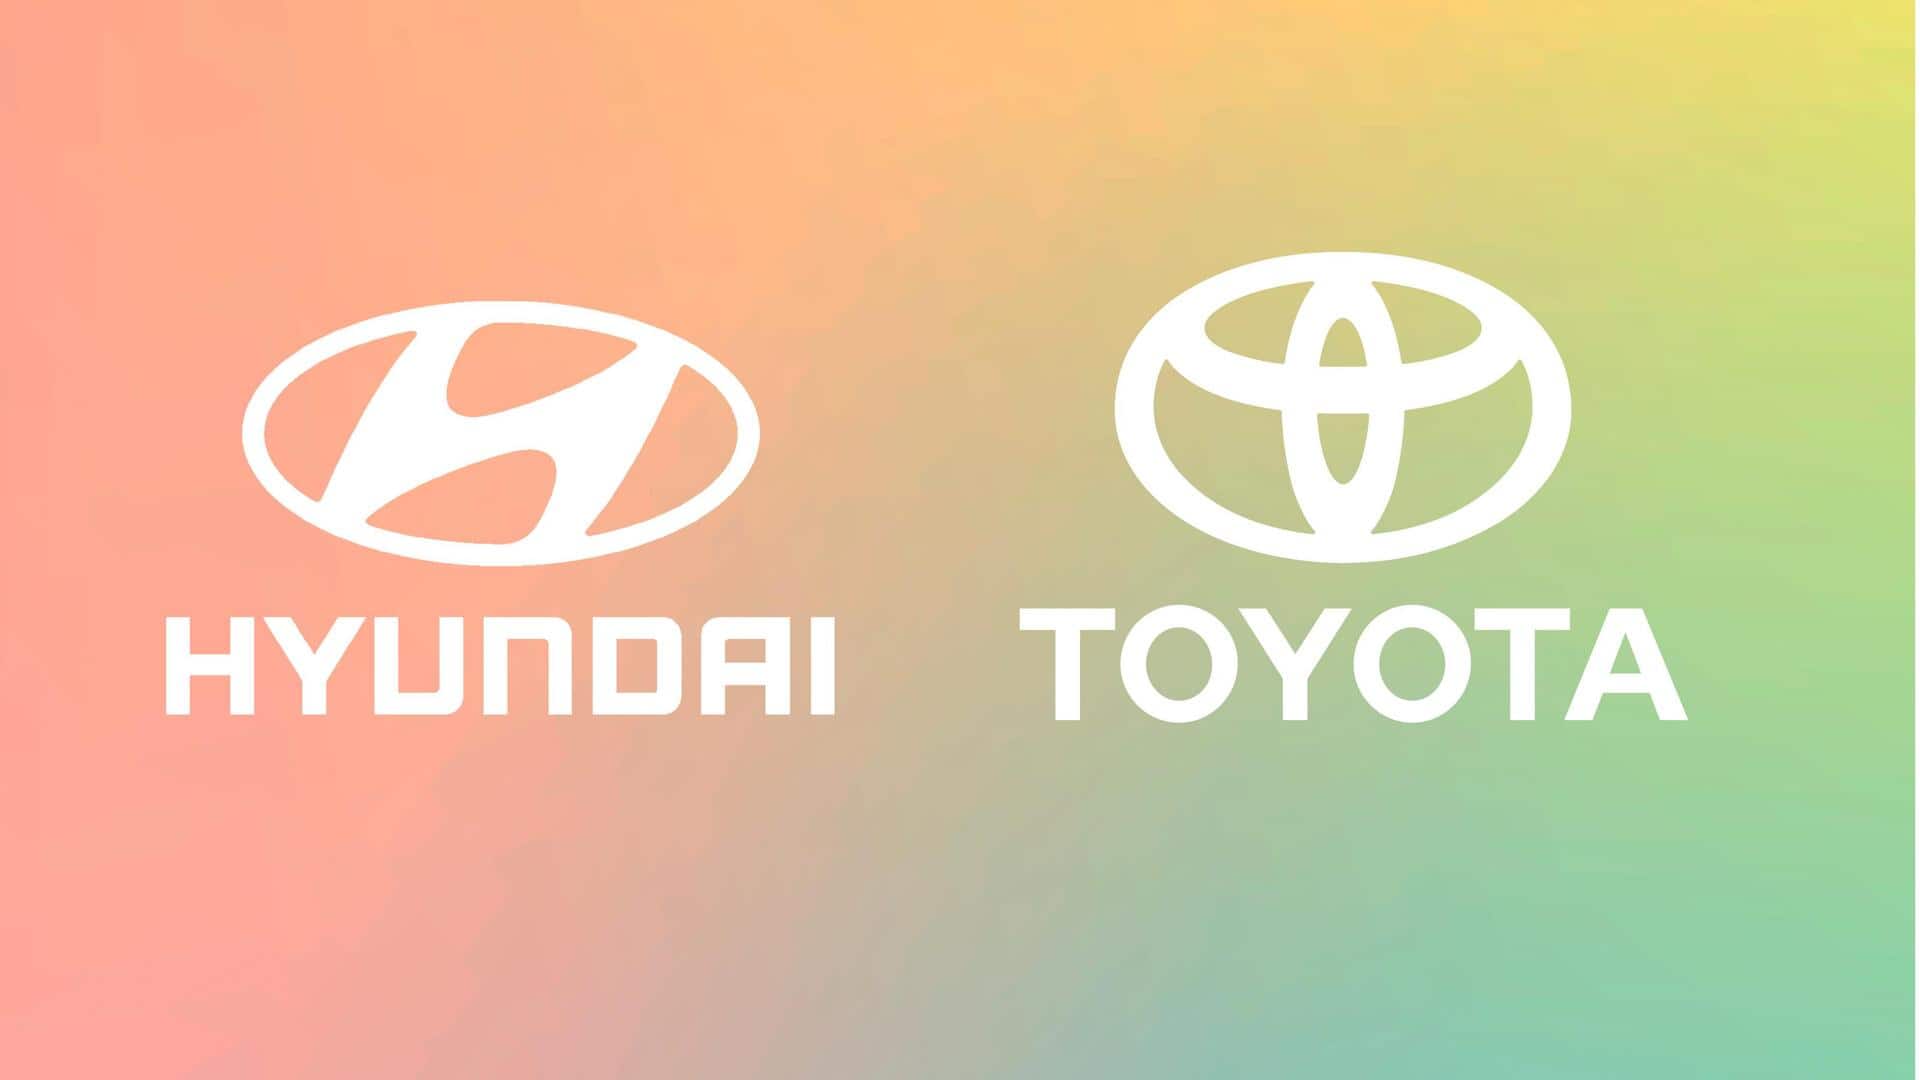 टोयोटा और हुंडई की बिक्री कैसी रही? जानिये सितंबर की सेल्स रिपोर्ट